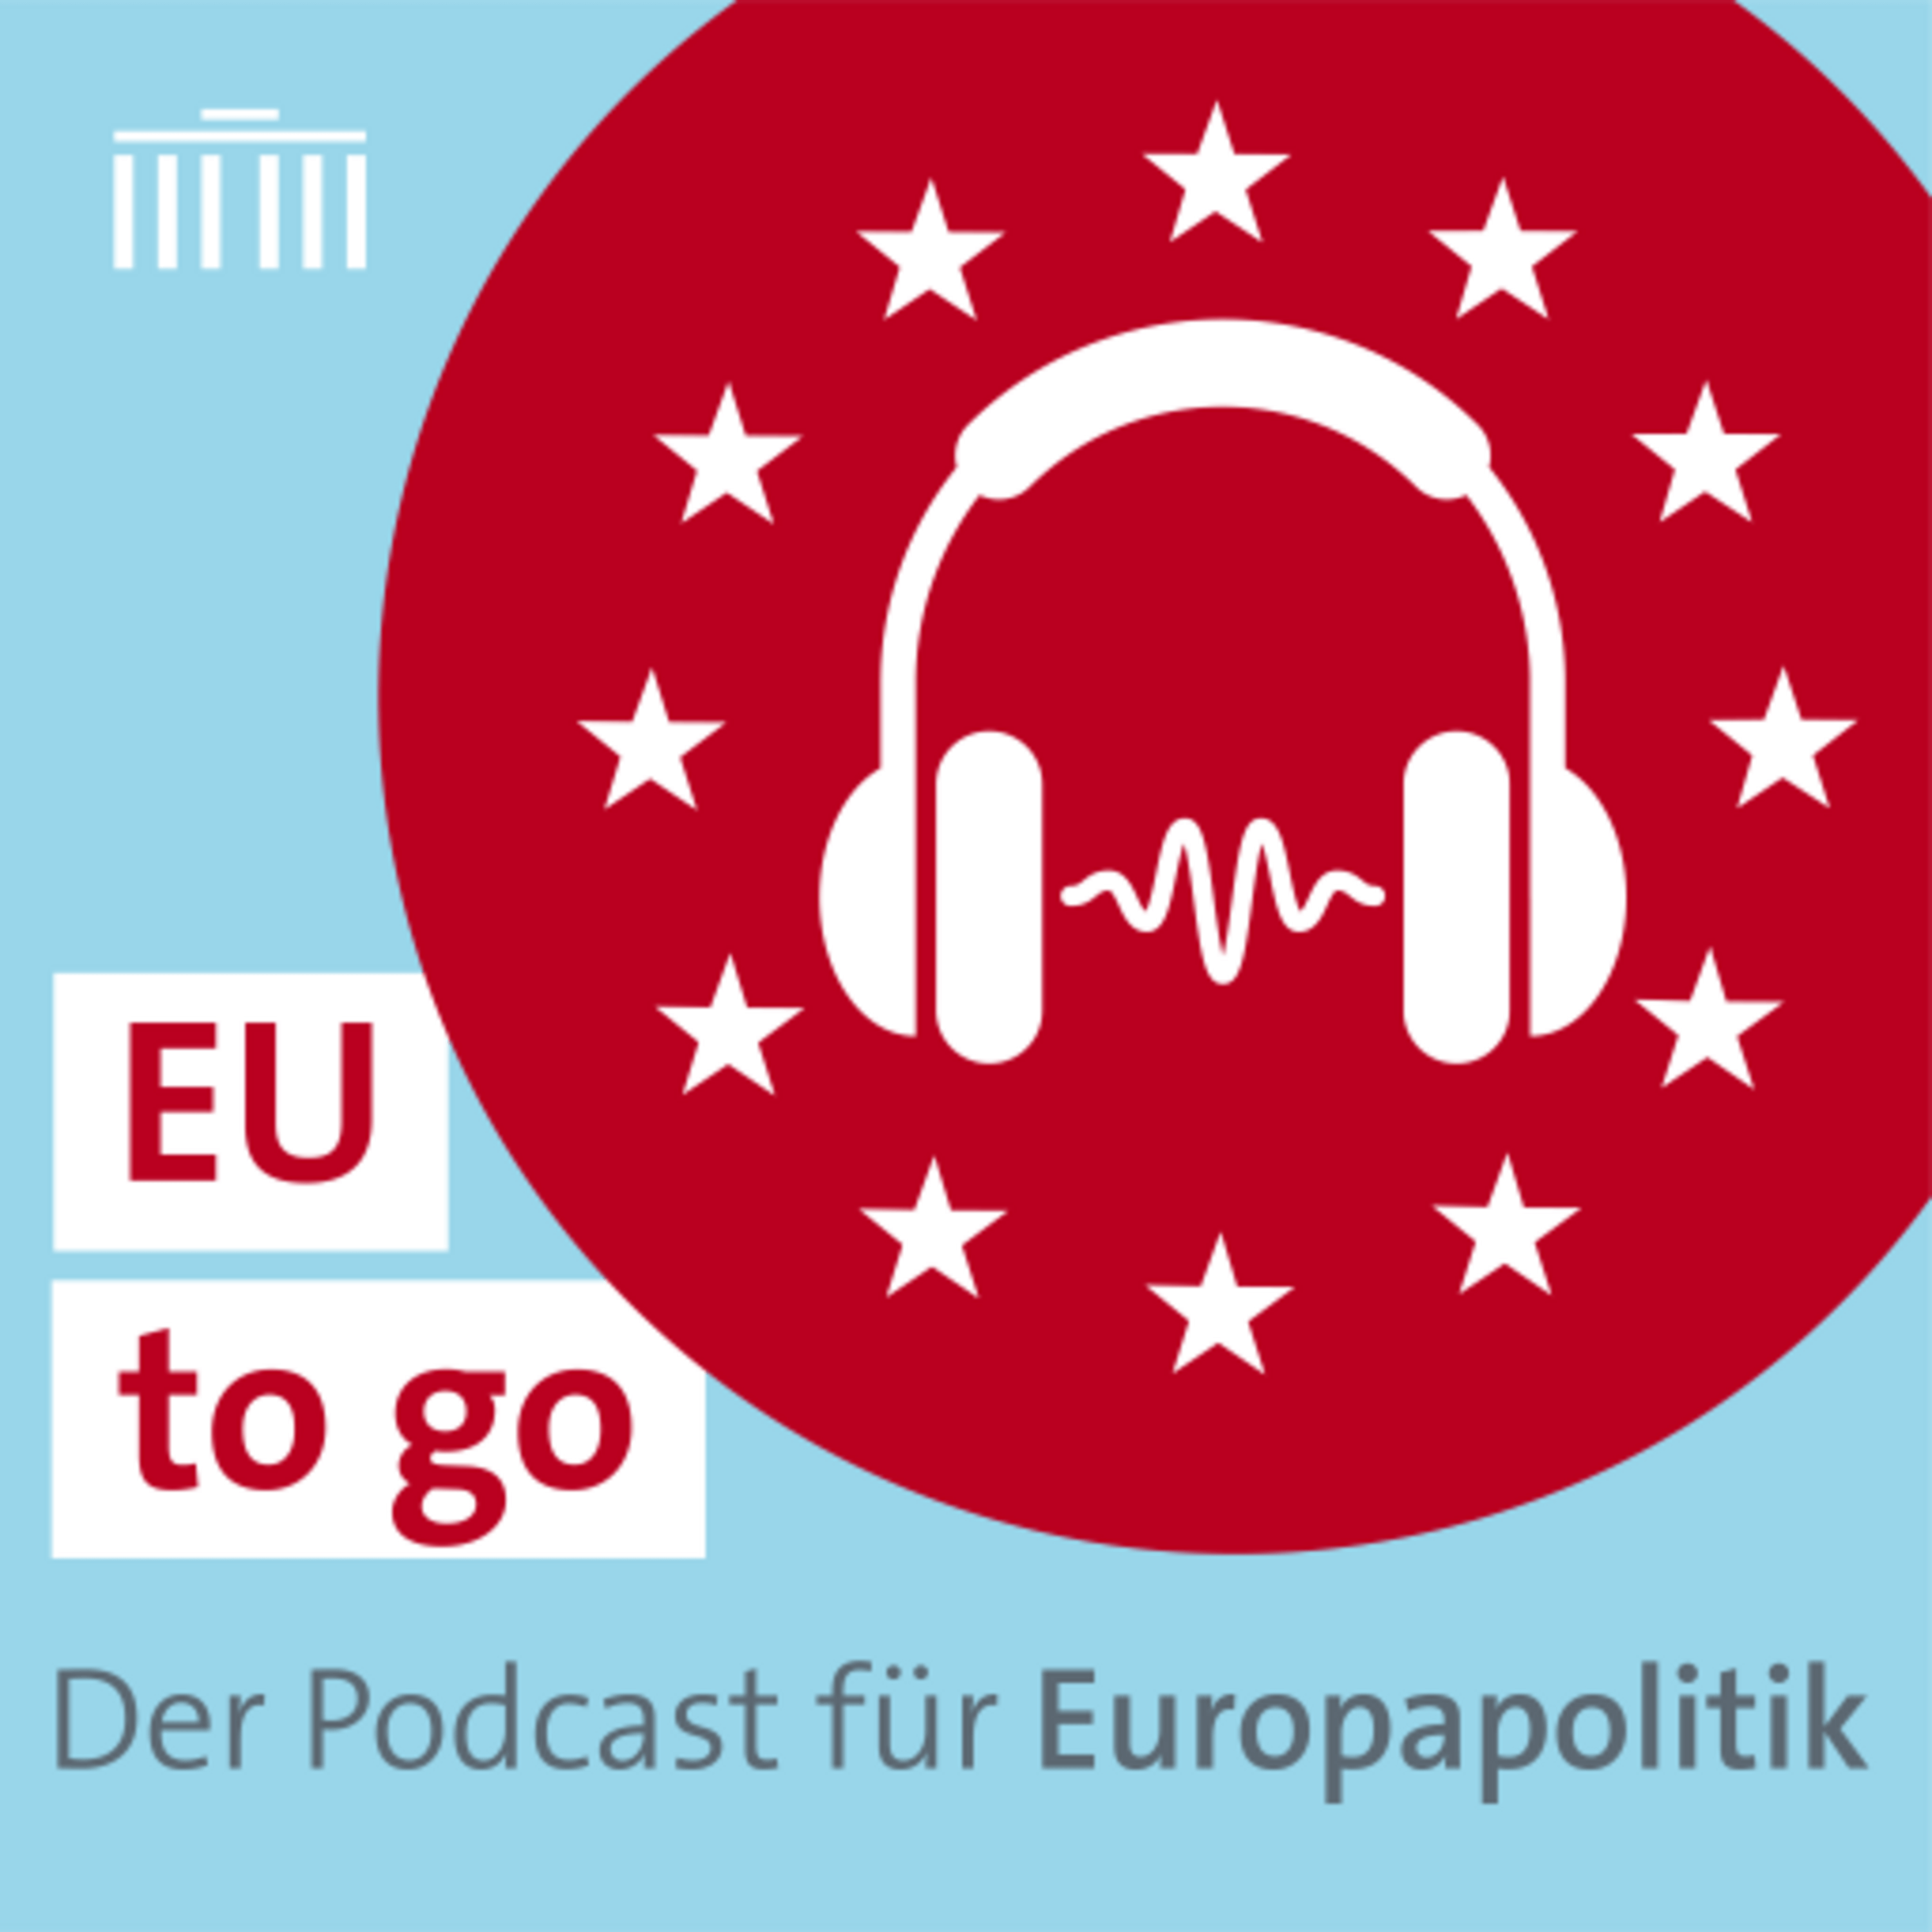 EU to go - der Podcast für Europapolitik